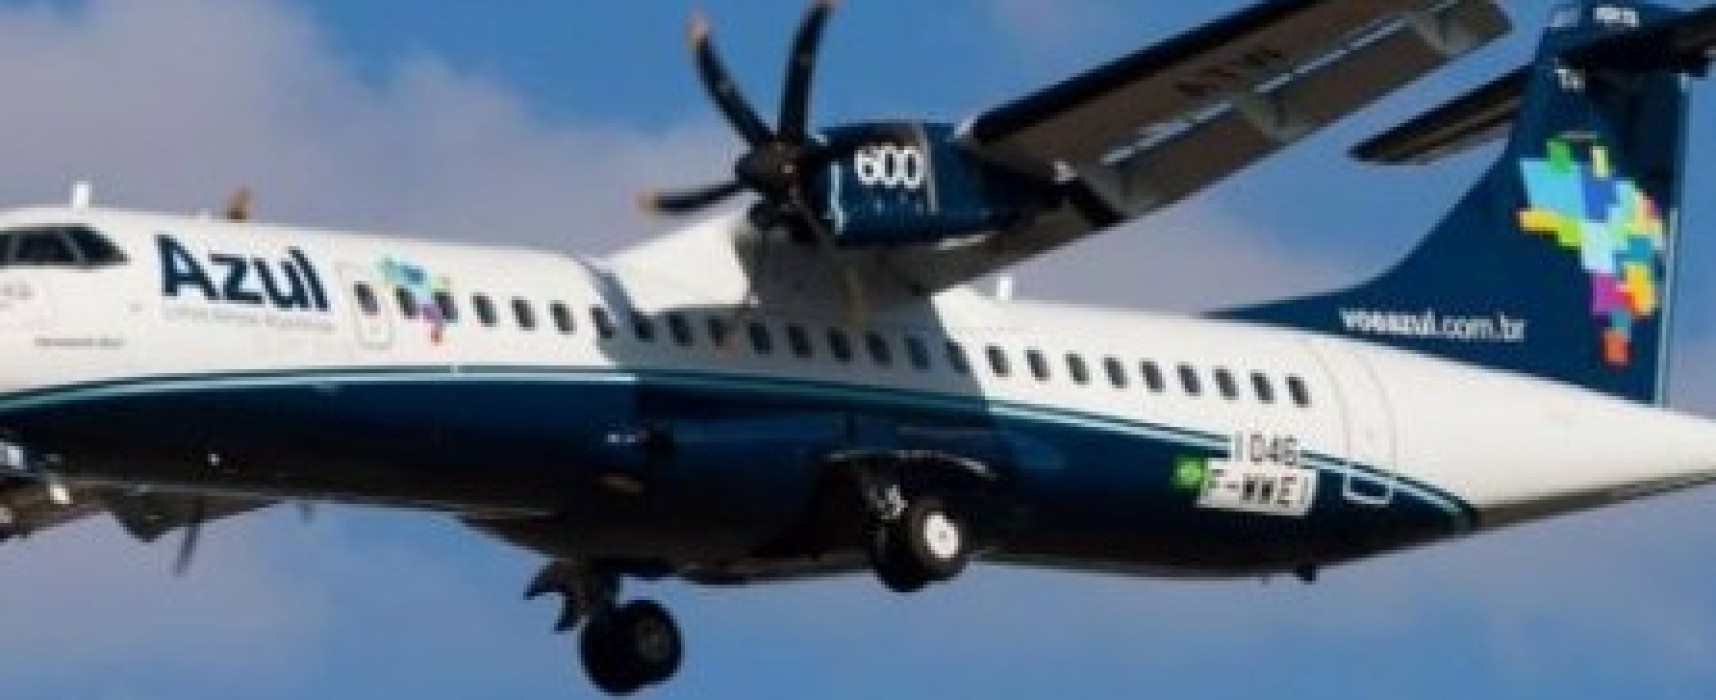 Azul vai colocar mais de 150 vôos extras para a Bahia